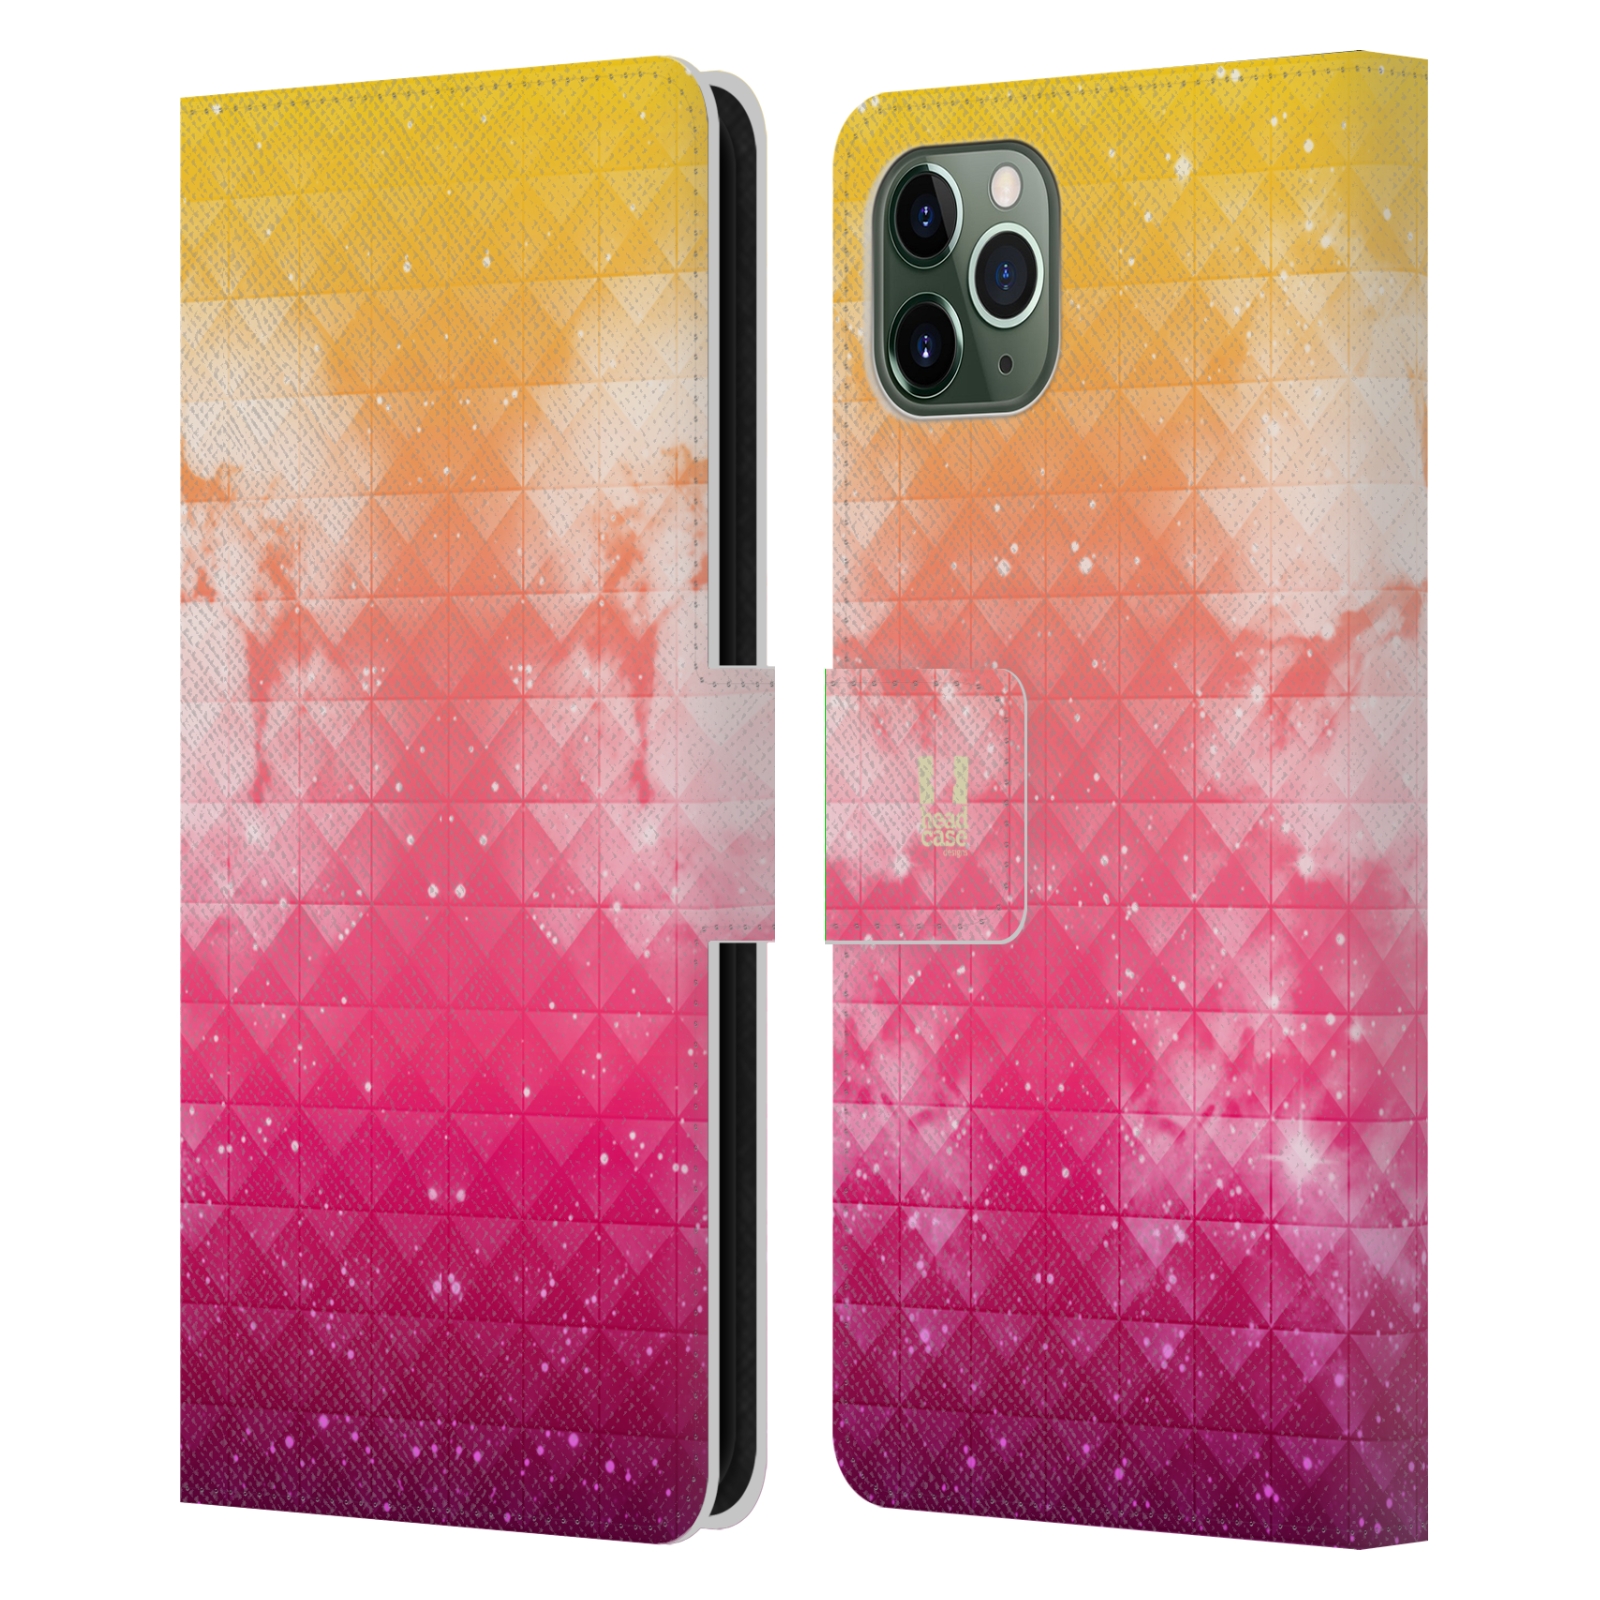 Pouzdro na mobil Apple Iphone 11 PRO MAX barevná vesmírná mlhovina oranžová a růžová